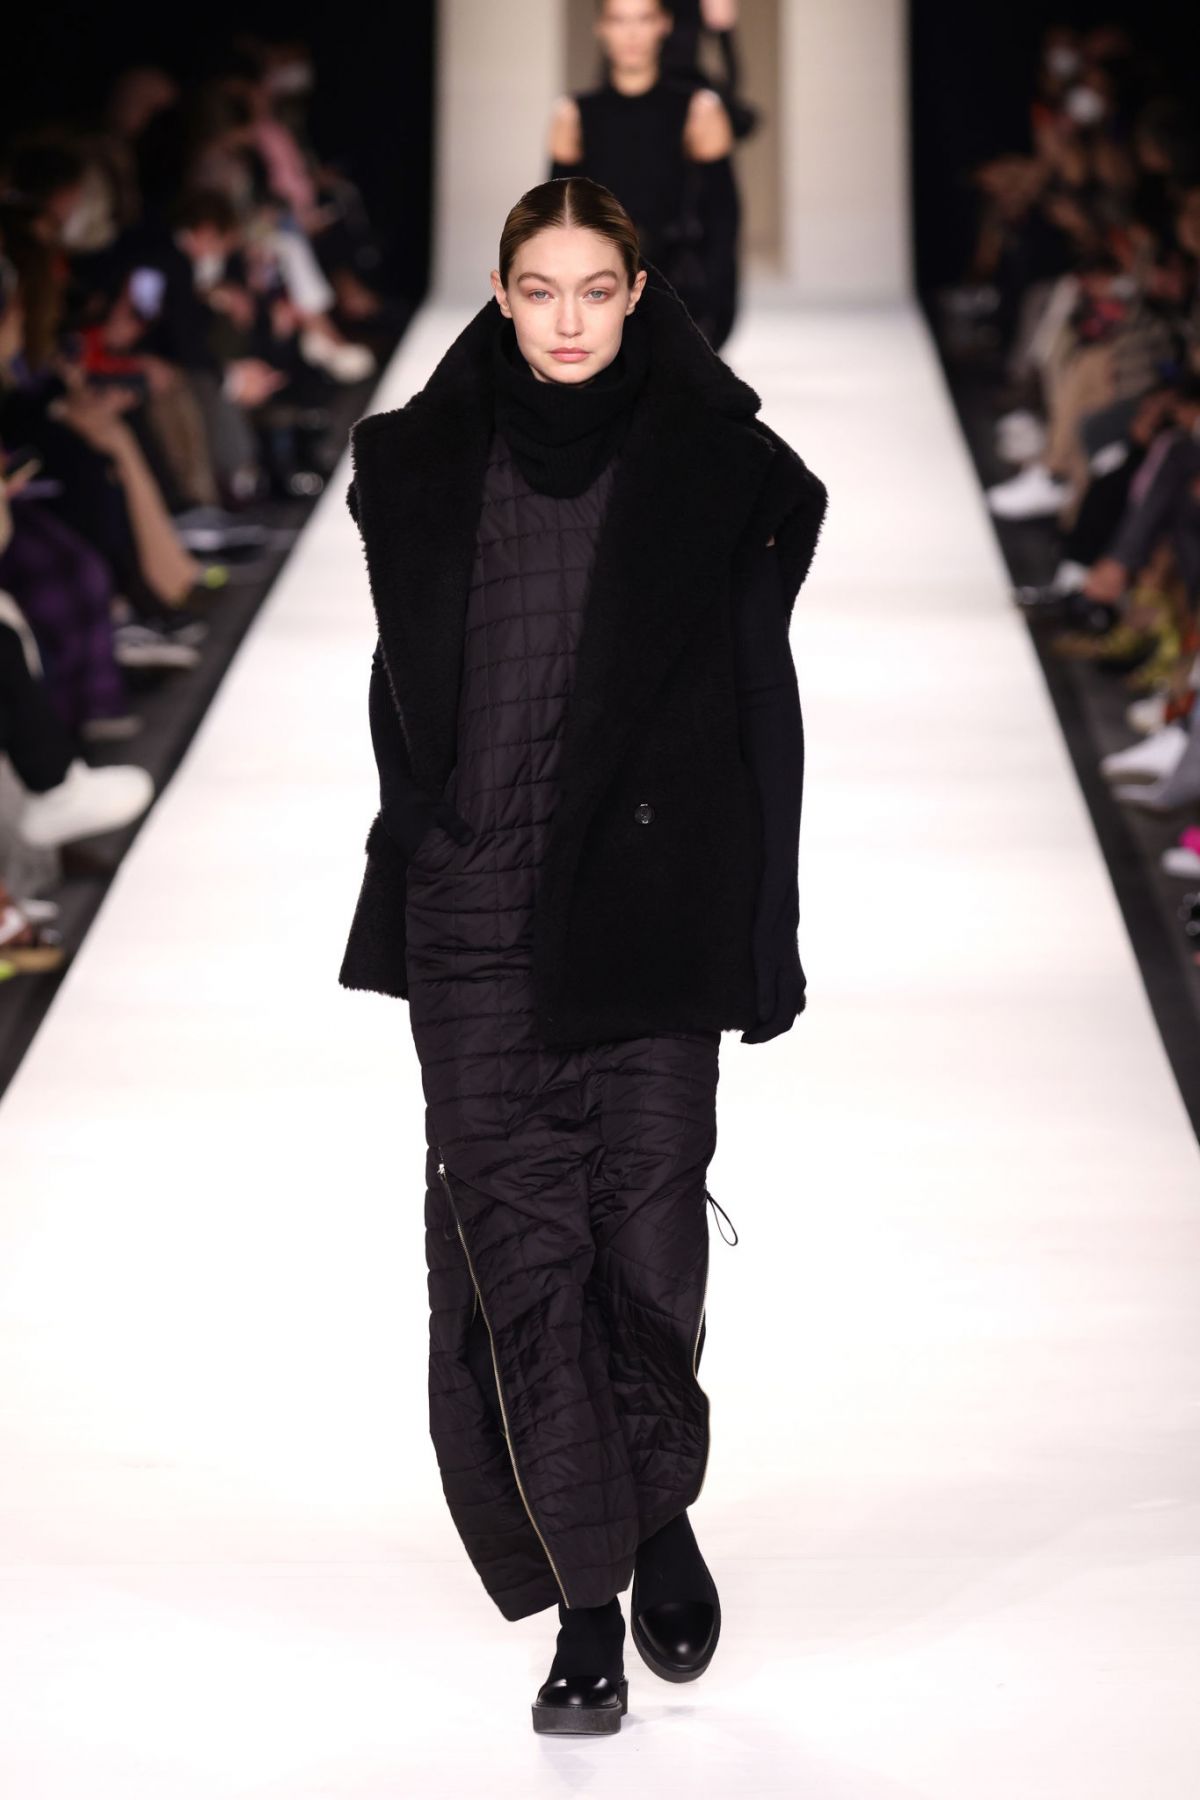 GIGI HADID Walks Runway at Max Mara Fashion Show in Milan 02/24/2022 ...